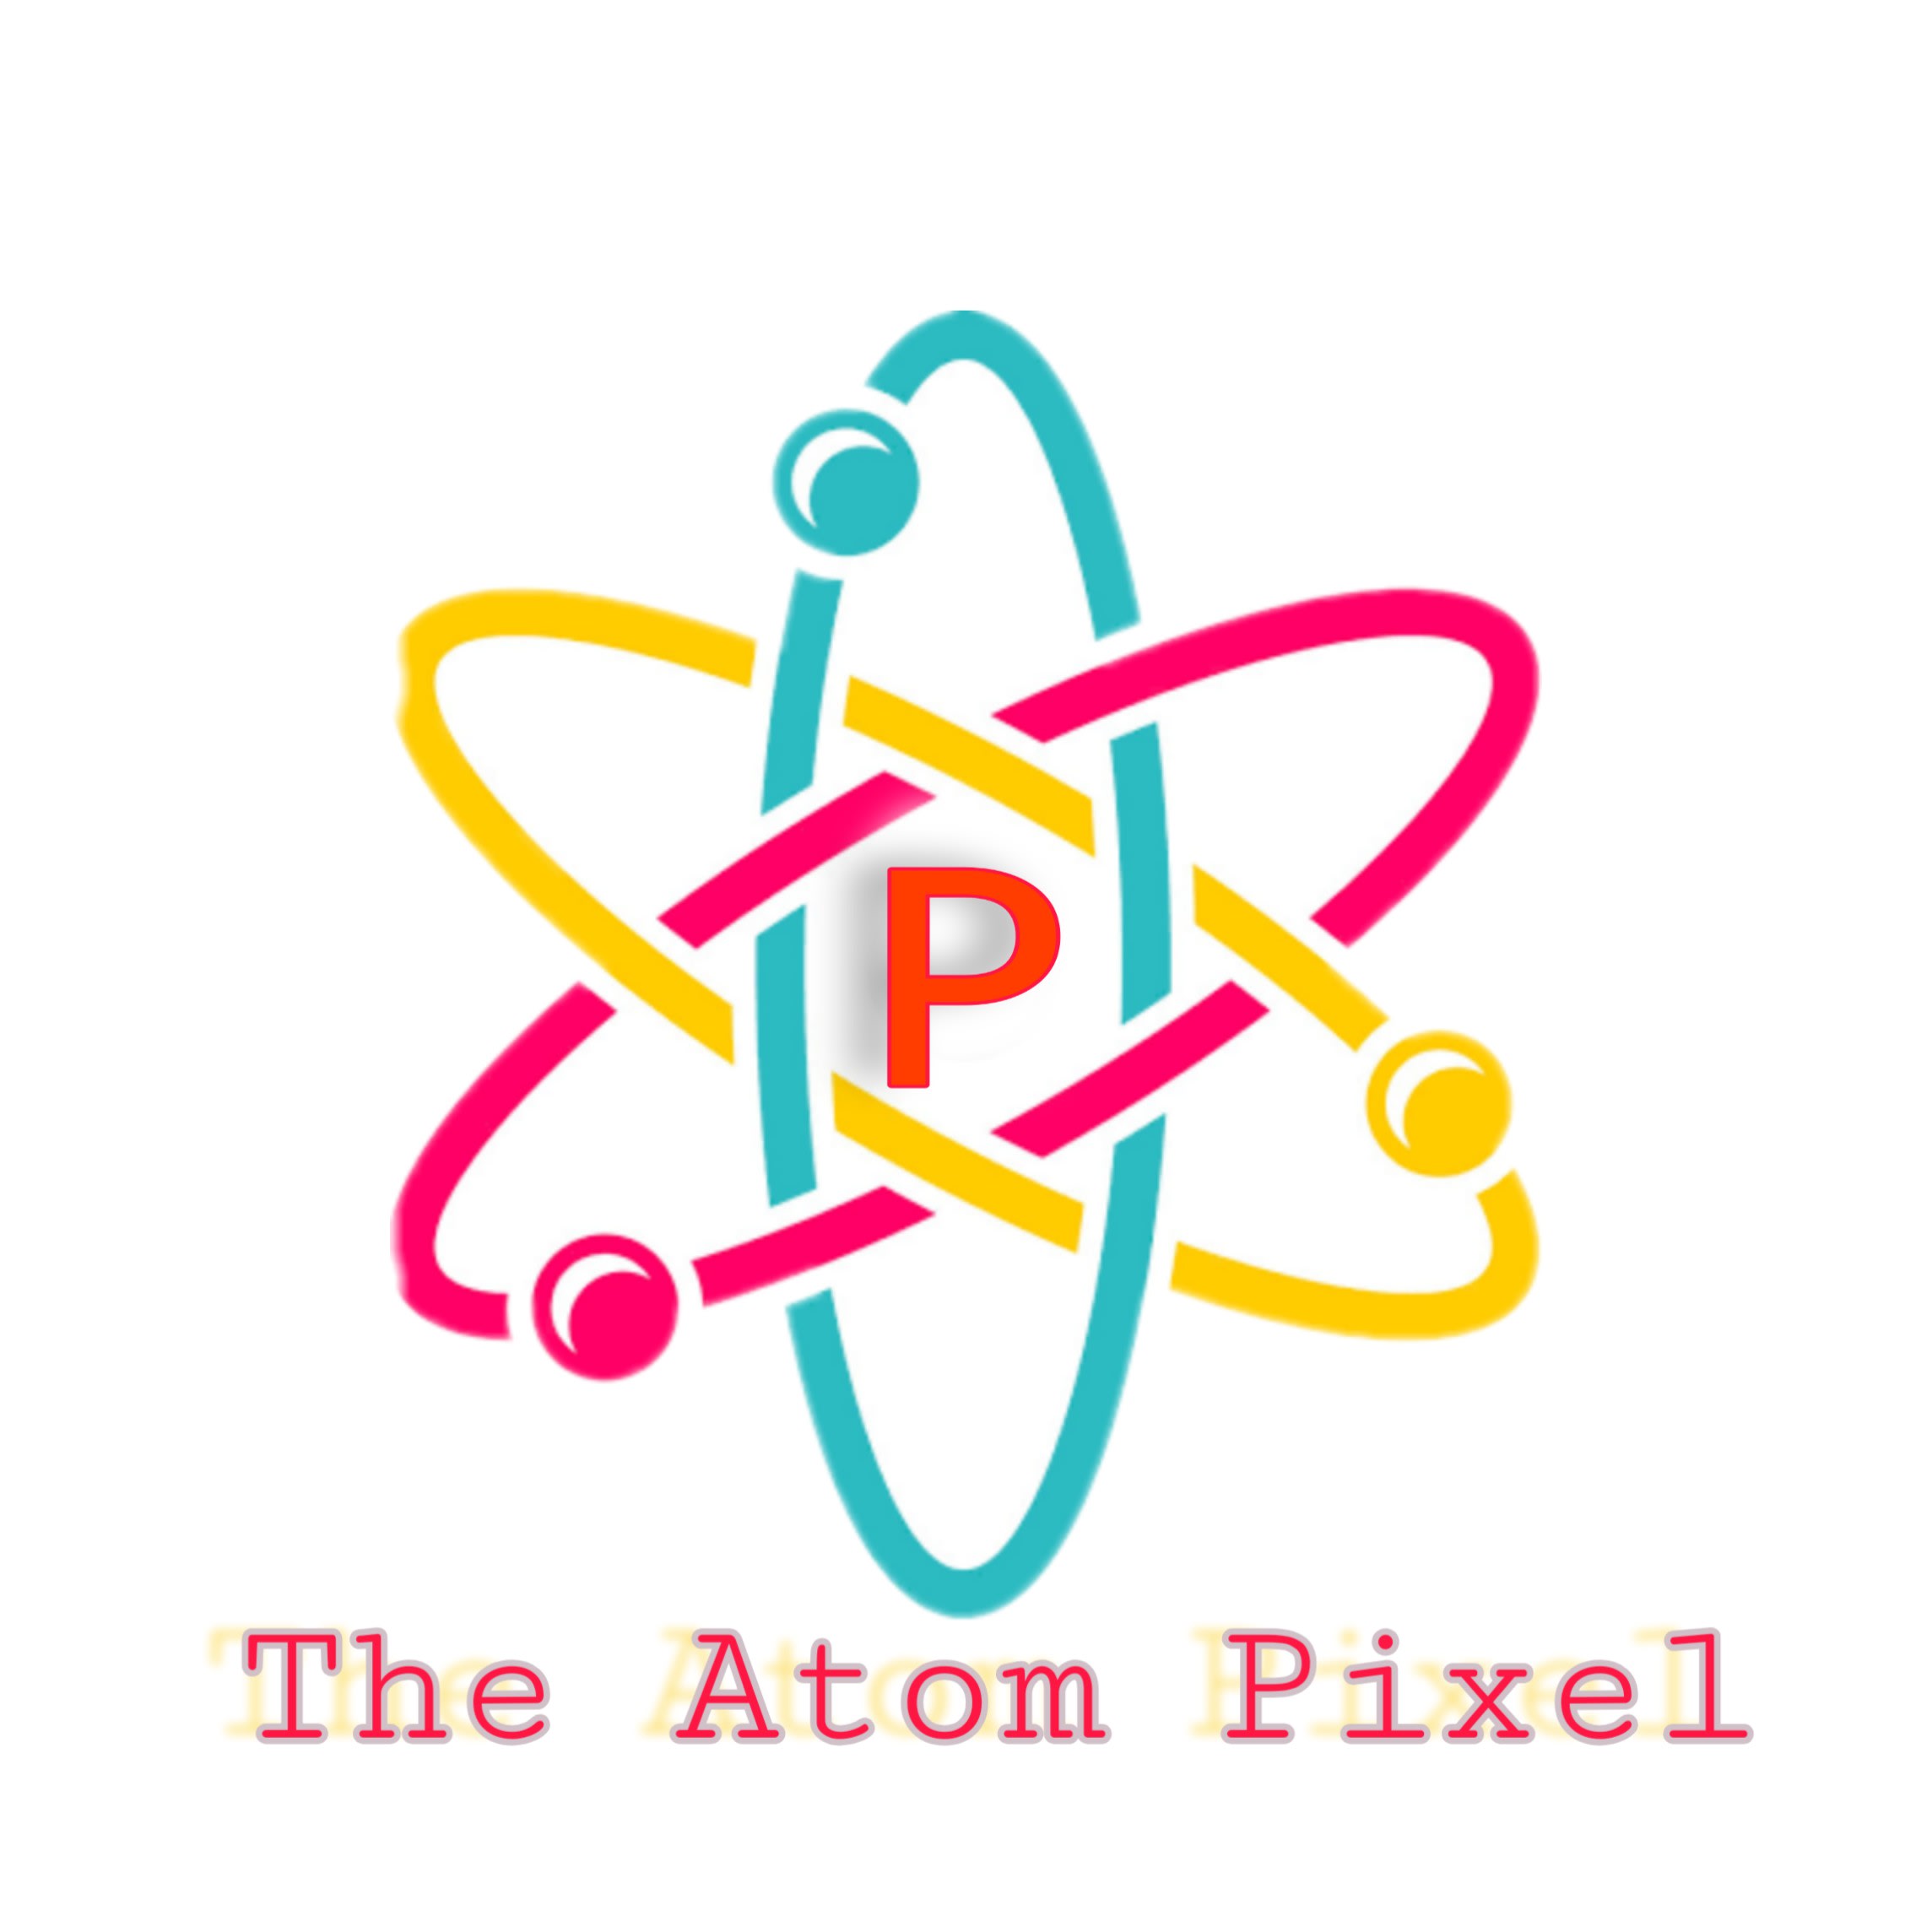 The Atom Pixels